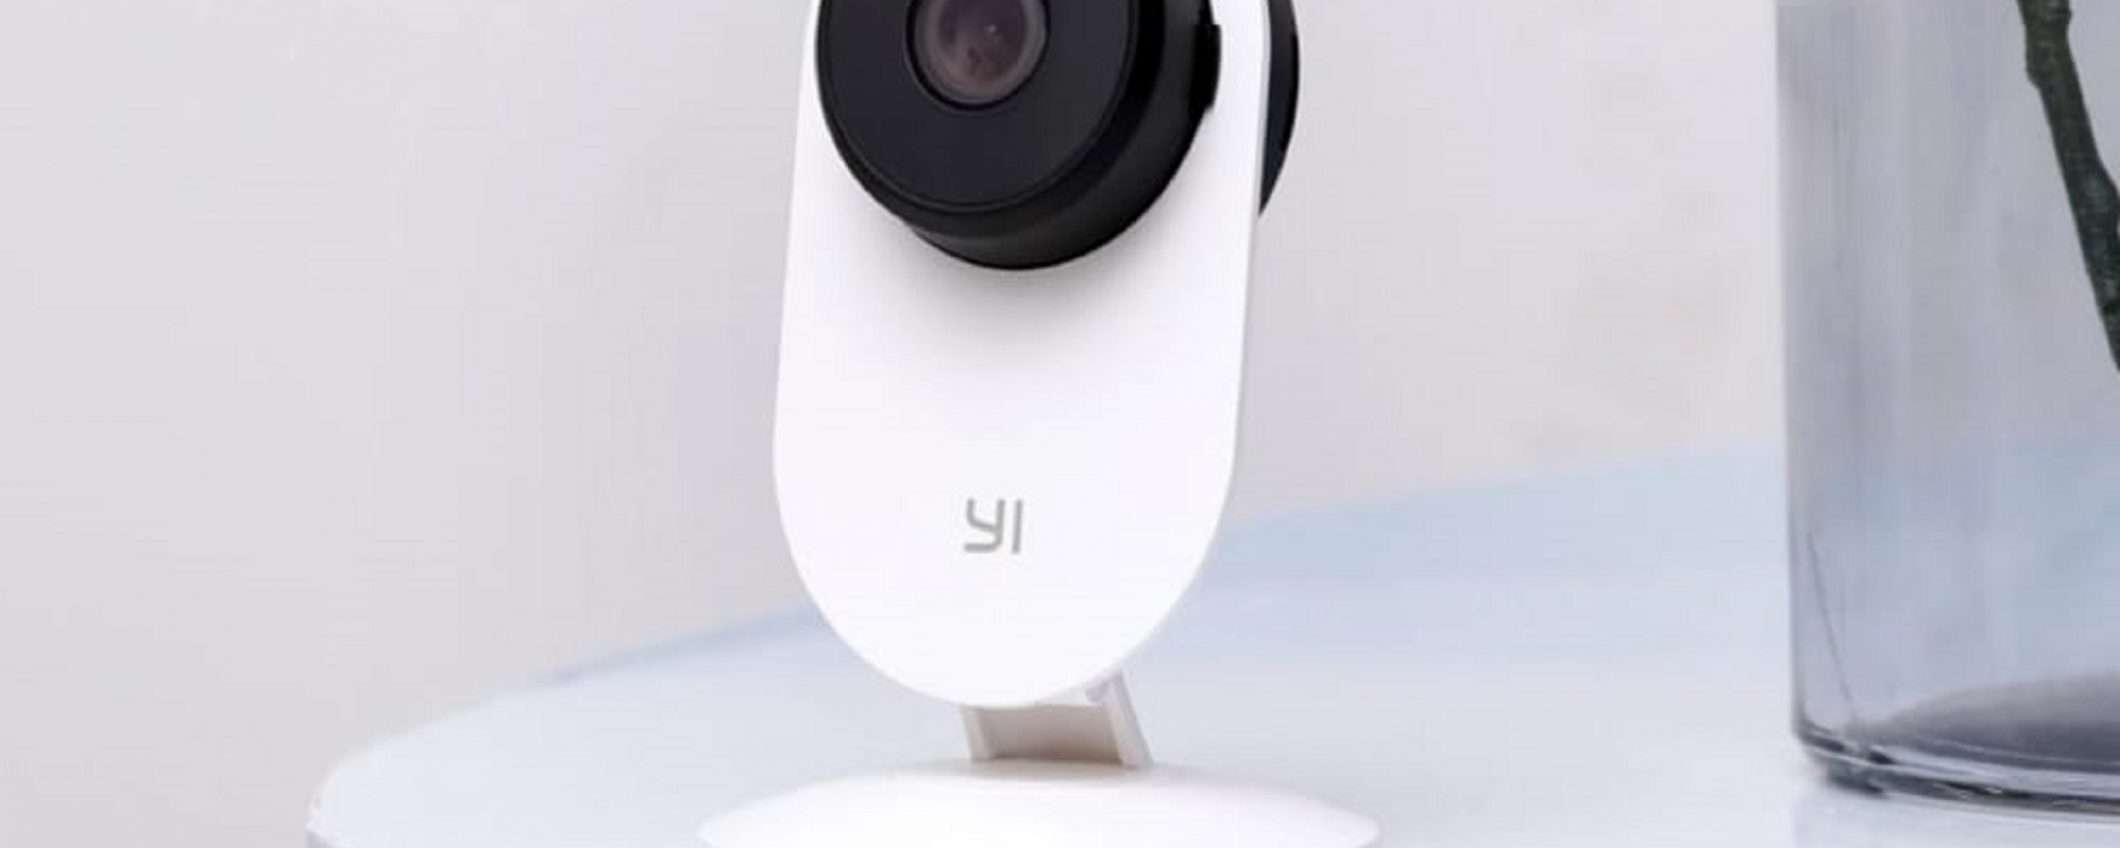 Videocamera di sorveglianza YI scontata del 47%: solo 21€!